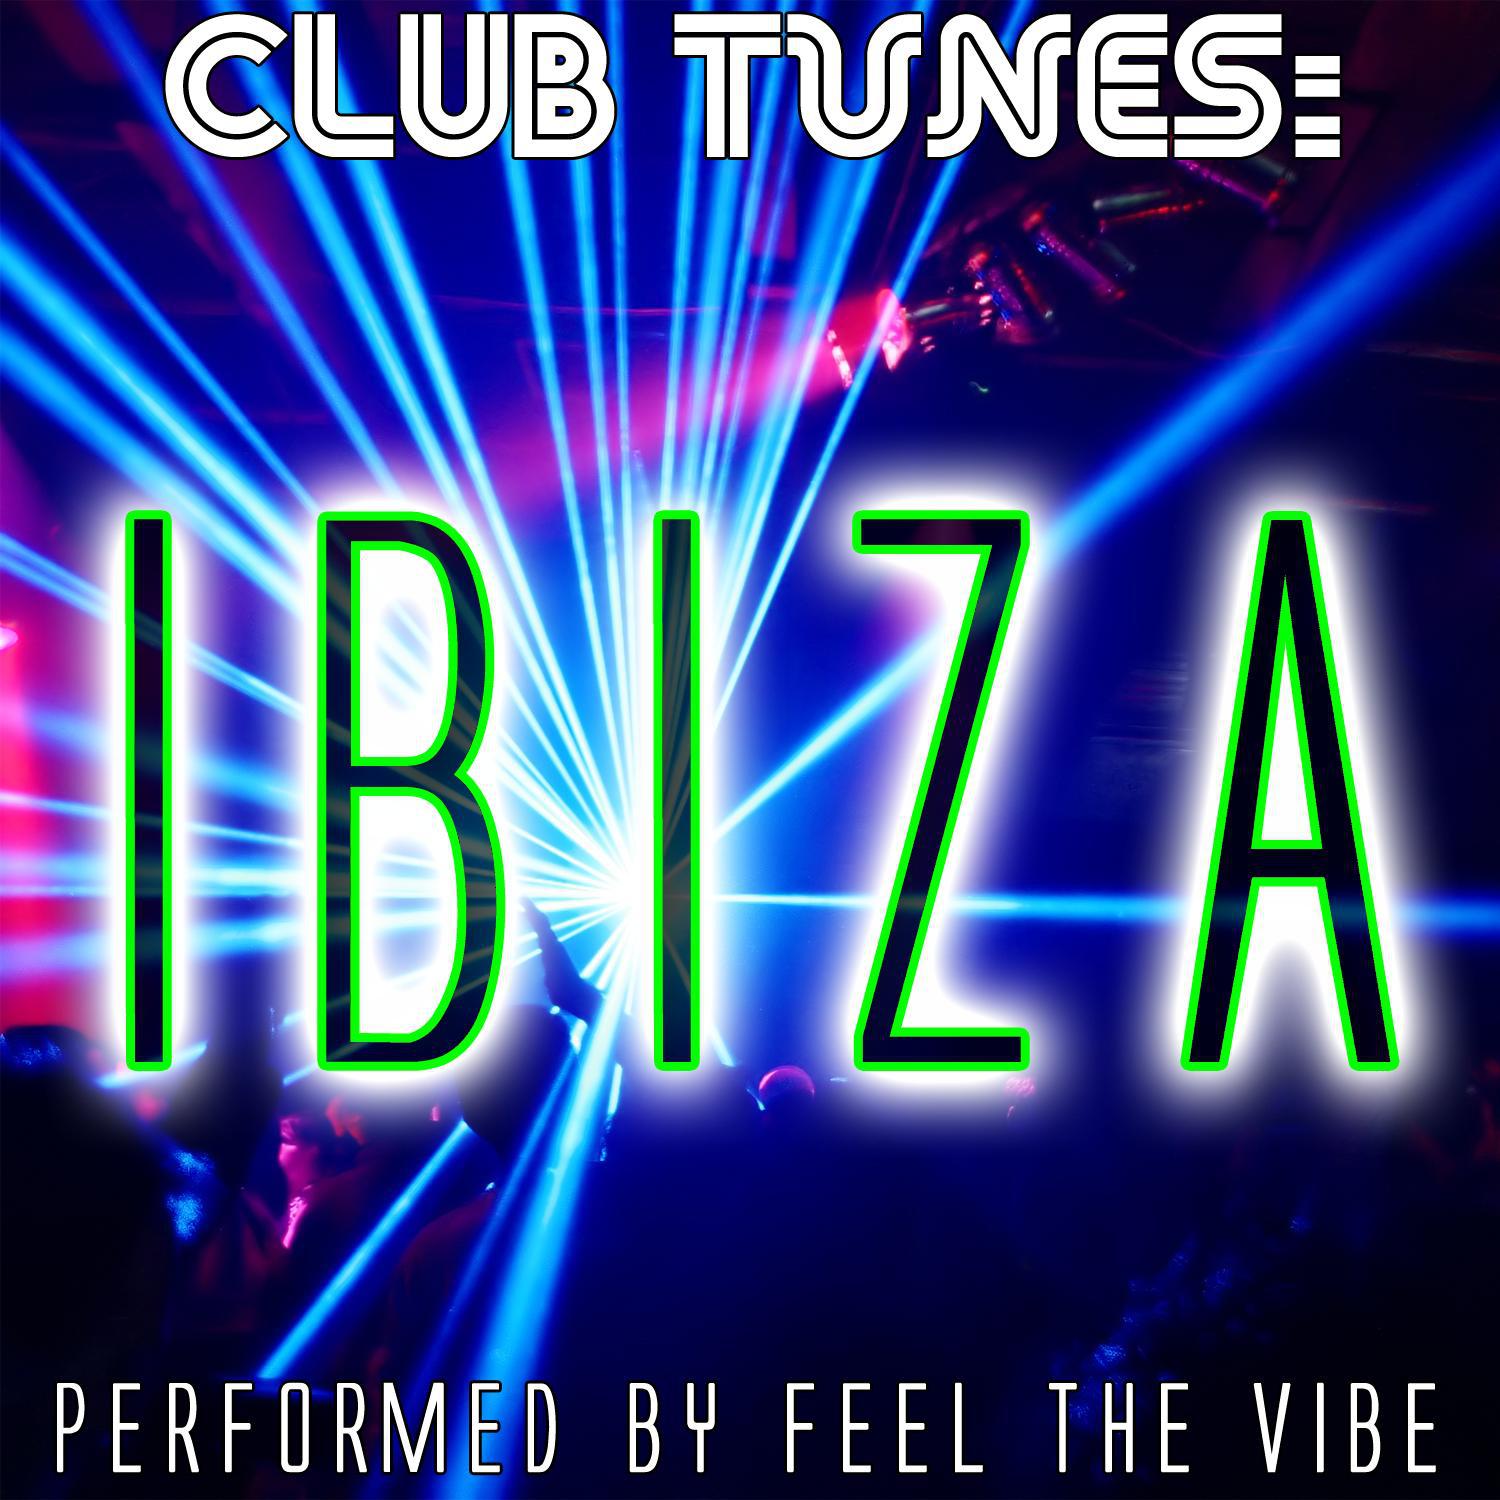 Club Tunes: Ibiza